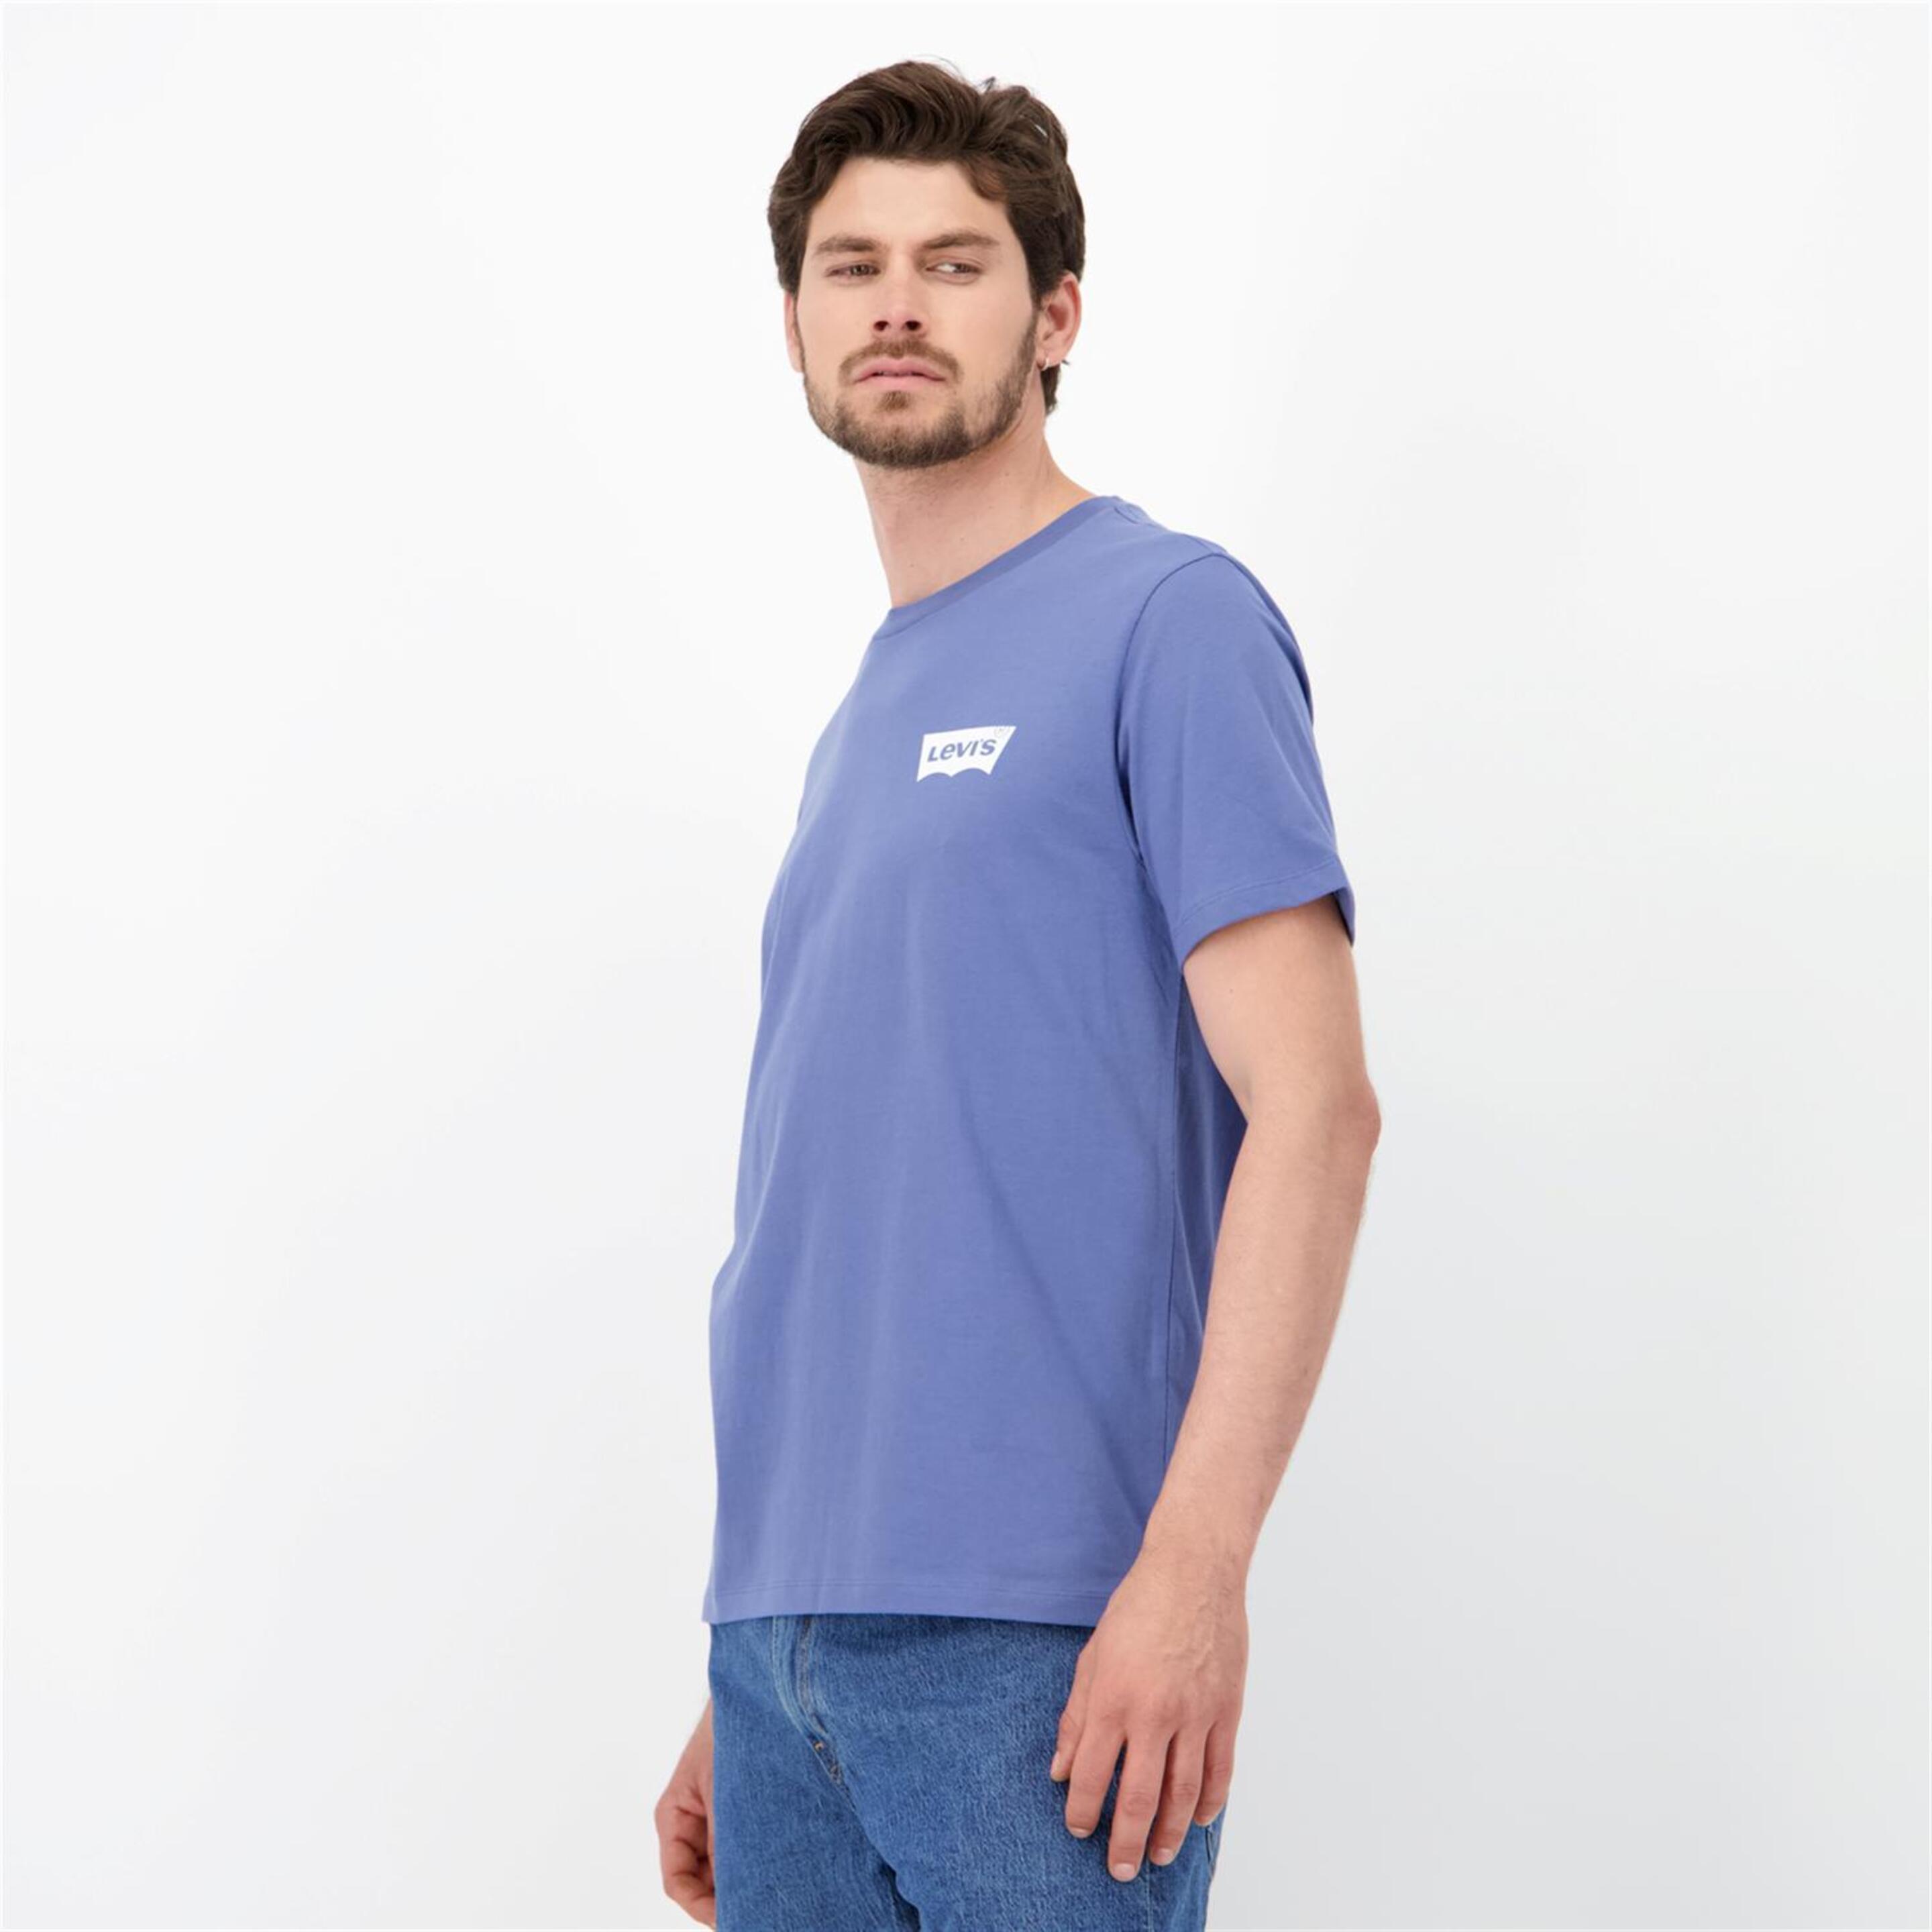 Levi's Graphic - Denim - Camiseta Hombre